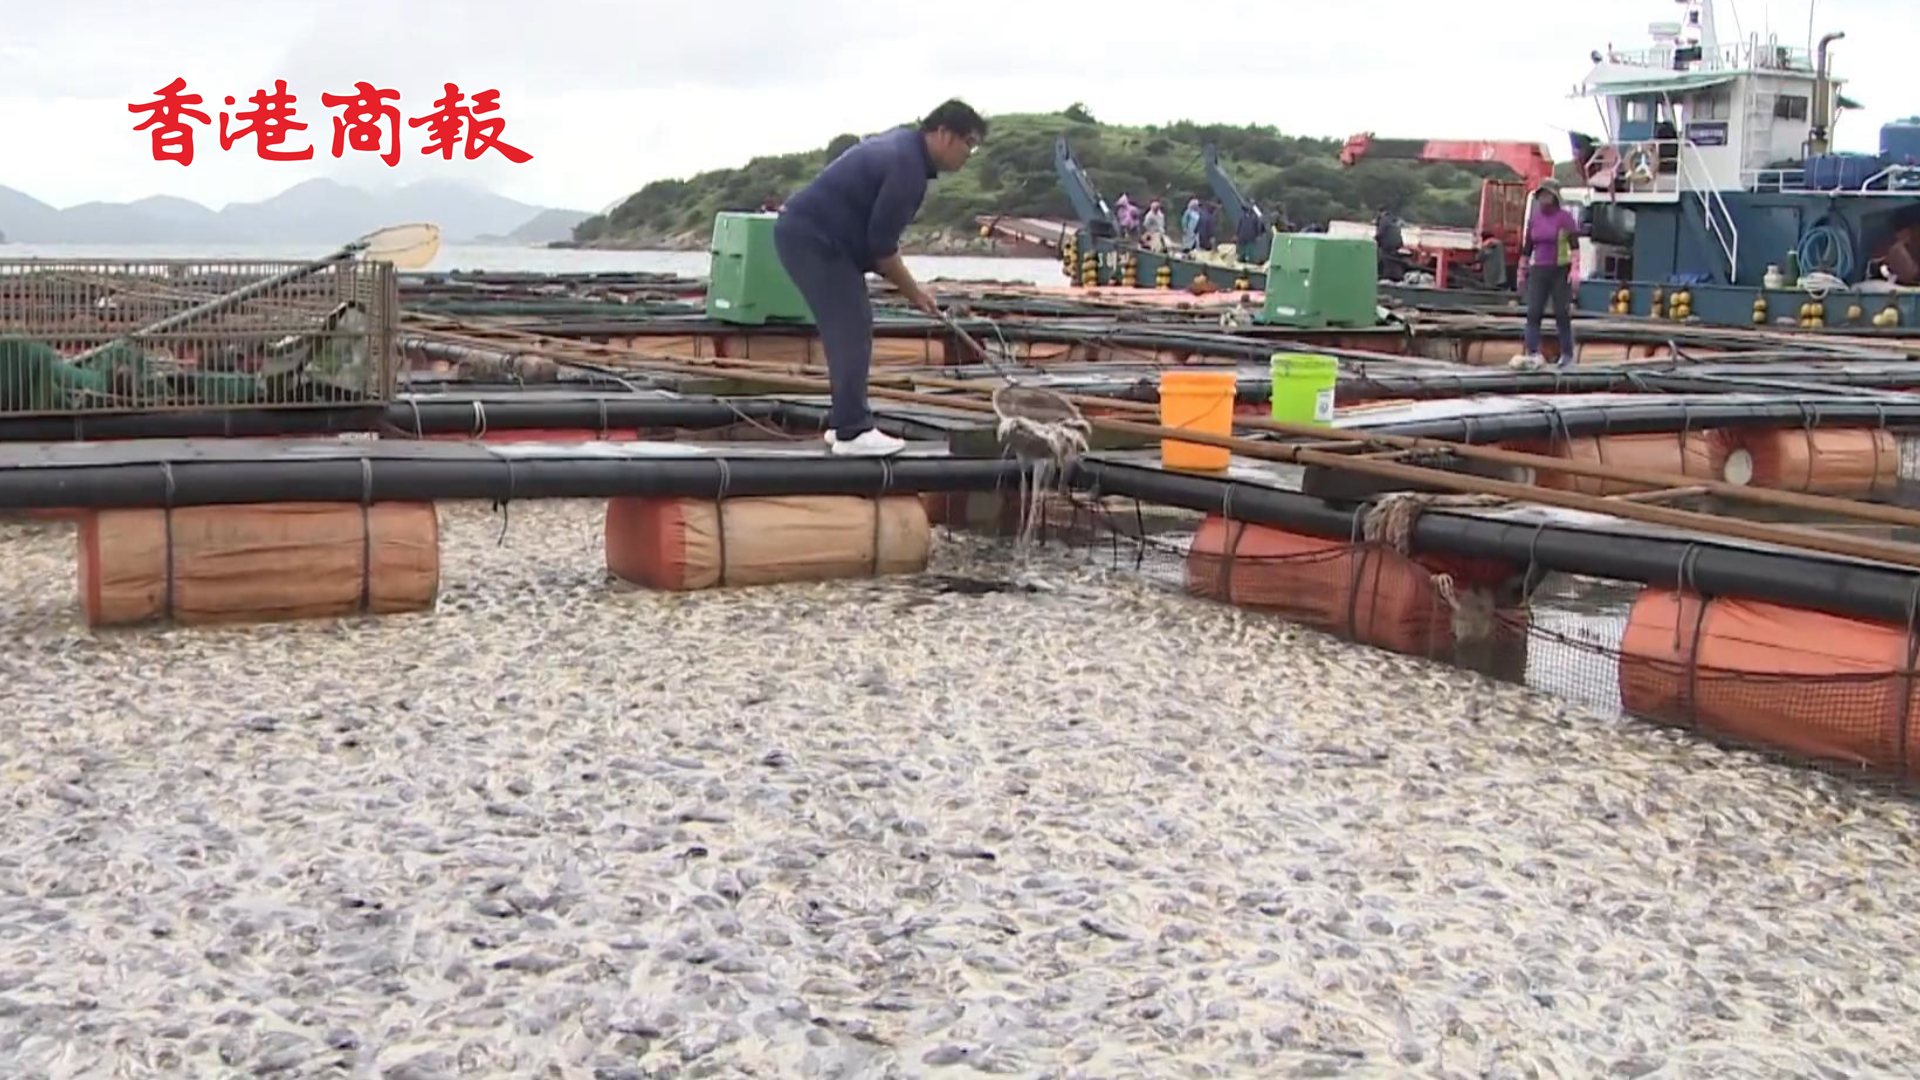 有片 | 銷路受阻水溫升高 韓國全羅南道麗水市超100萬條魚死亡